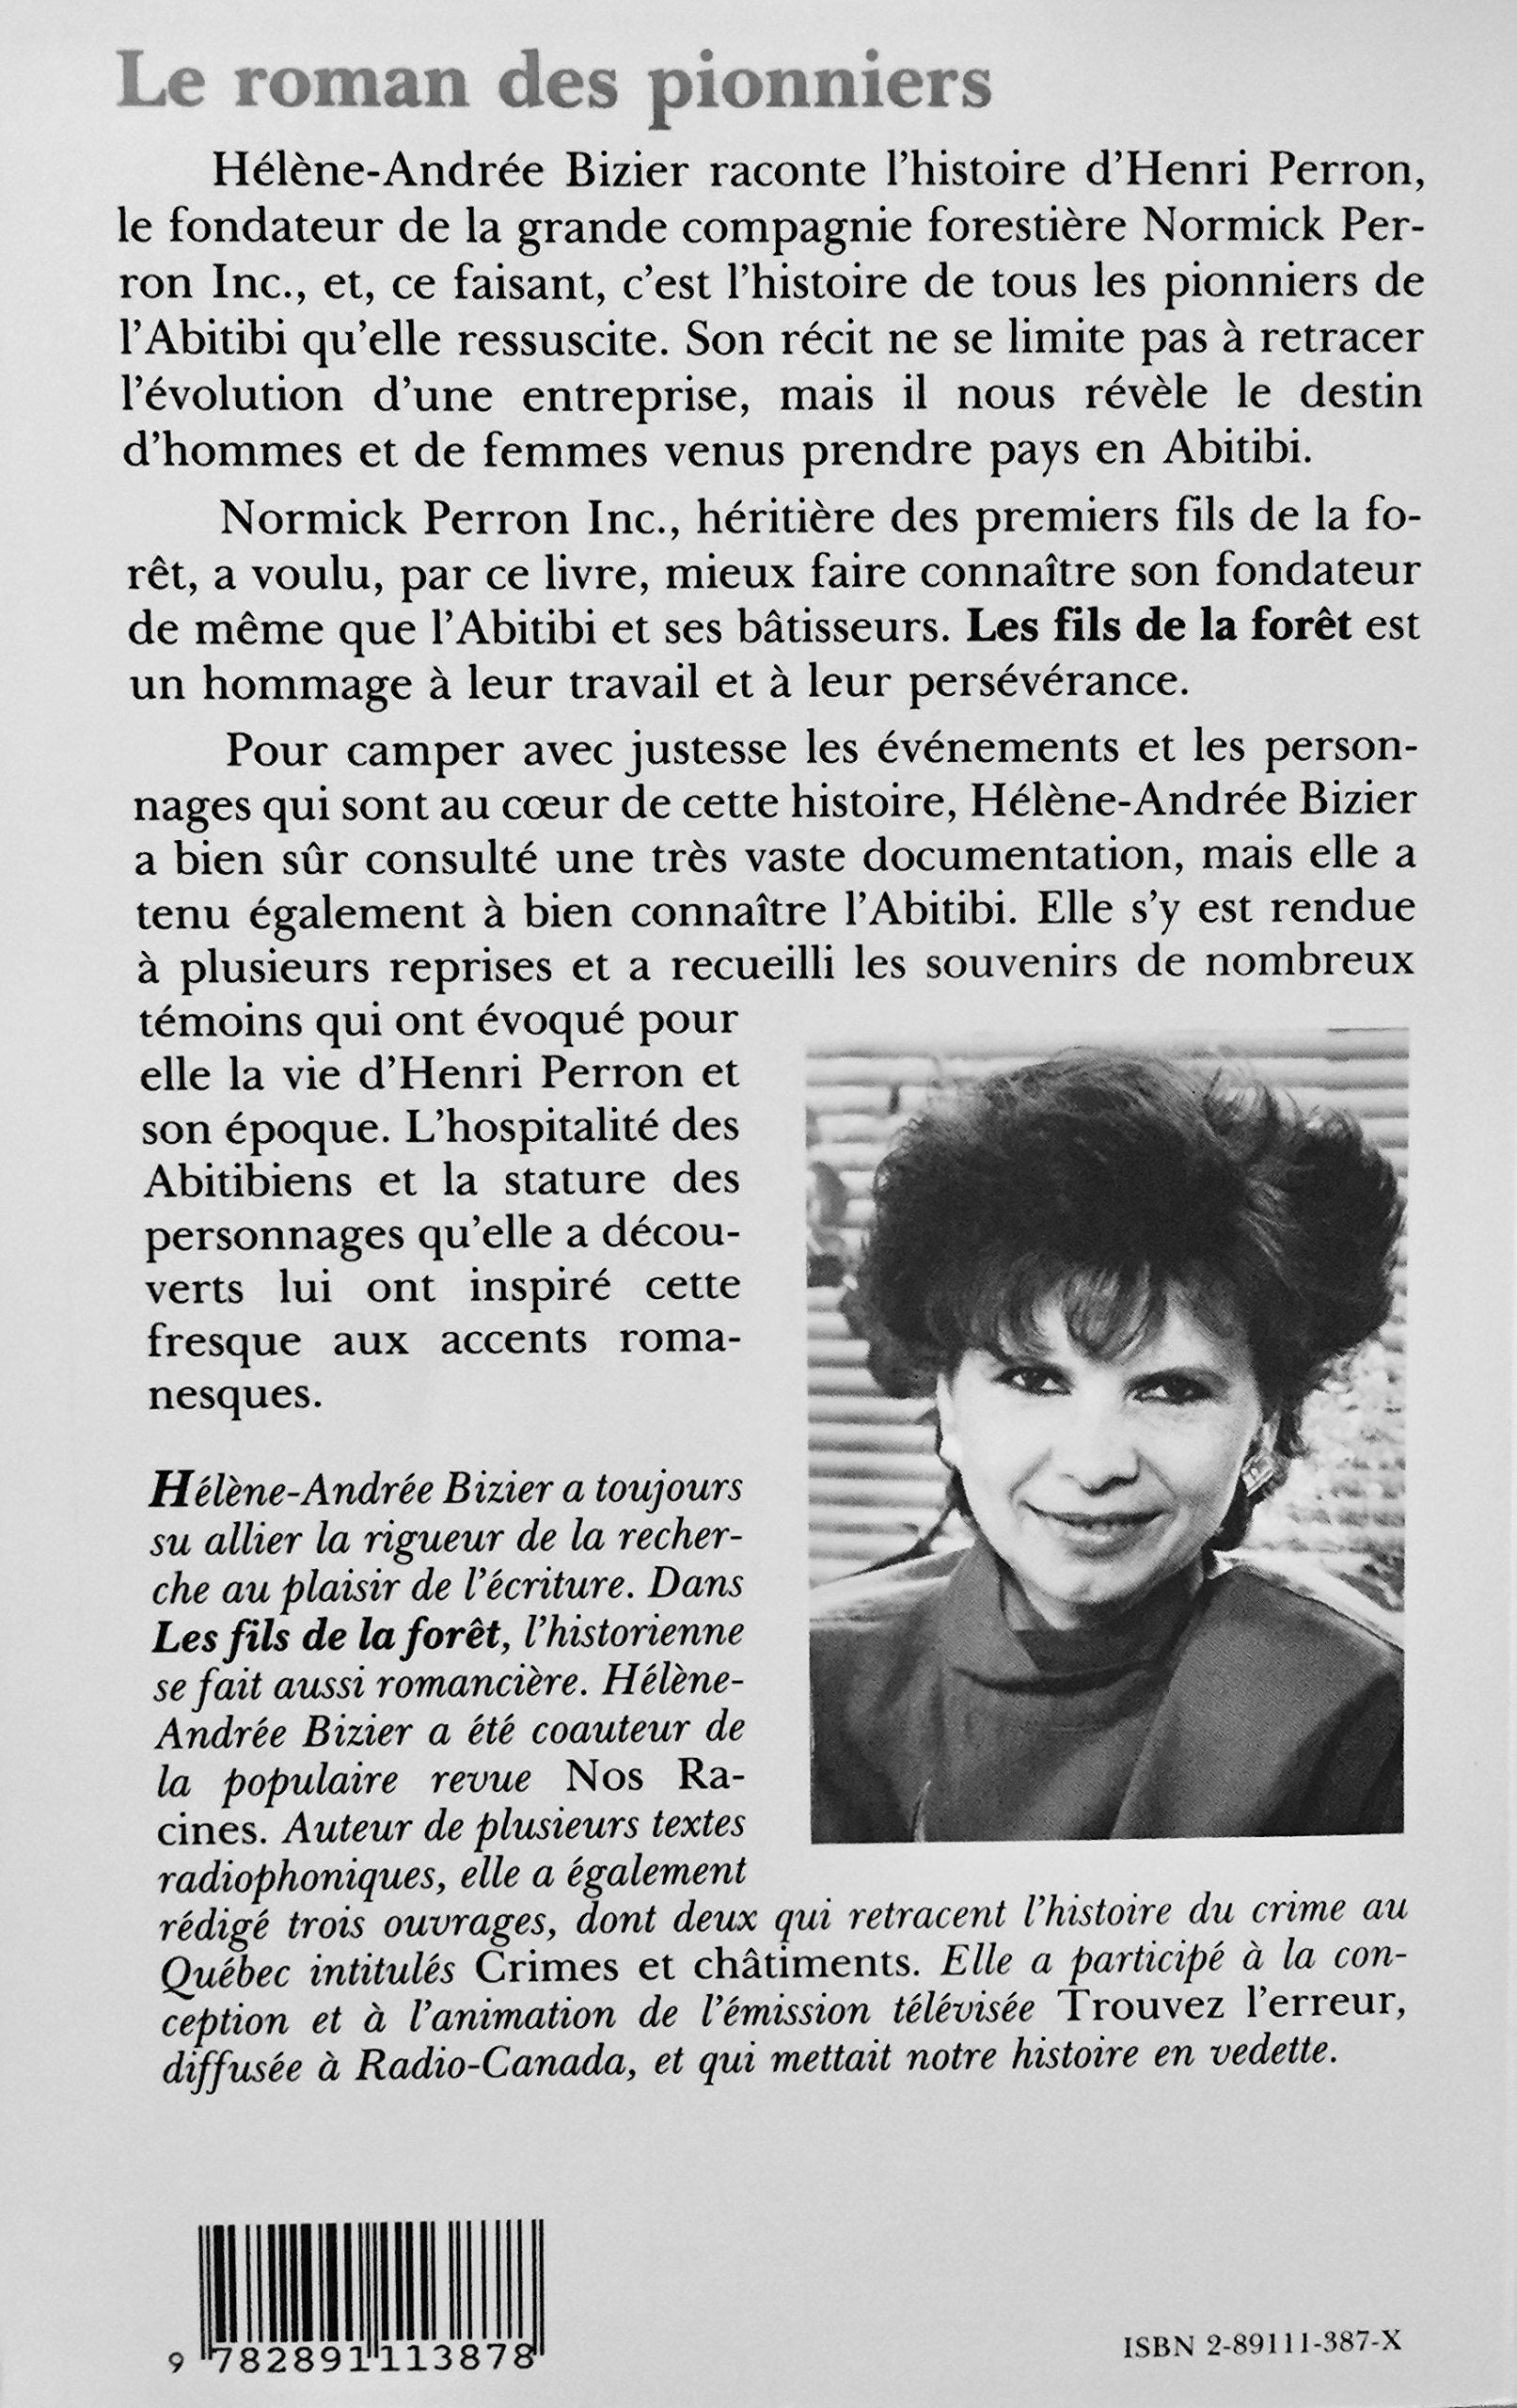 Les fils de la forêt : Normick Perron, le roman des pionniers (Hélène-Andrée Bizier)